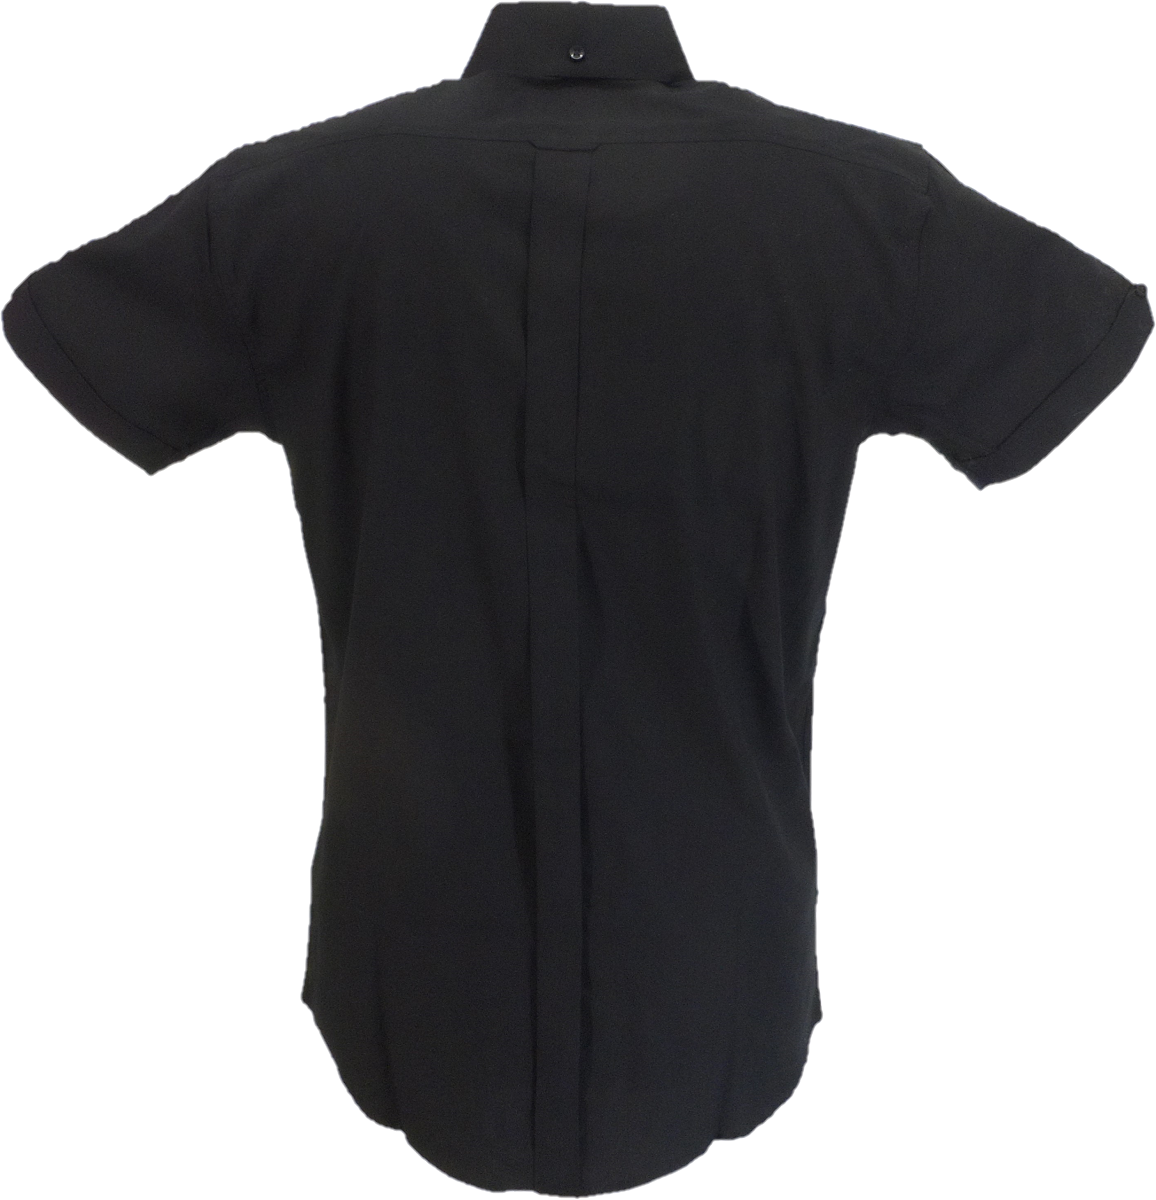 قمصان Relco قطن أكسفورد سوداء بأكمام قصيرة وأزرار سفلية